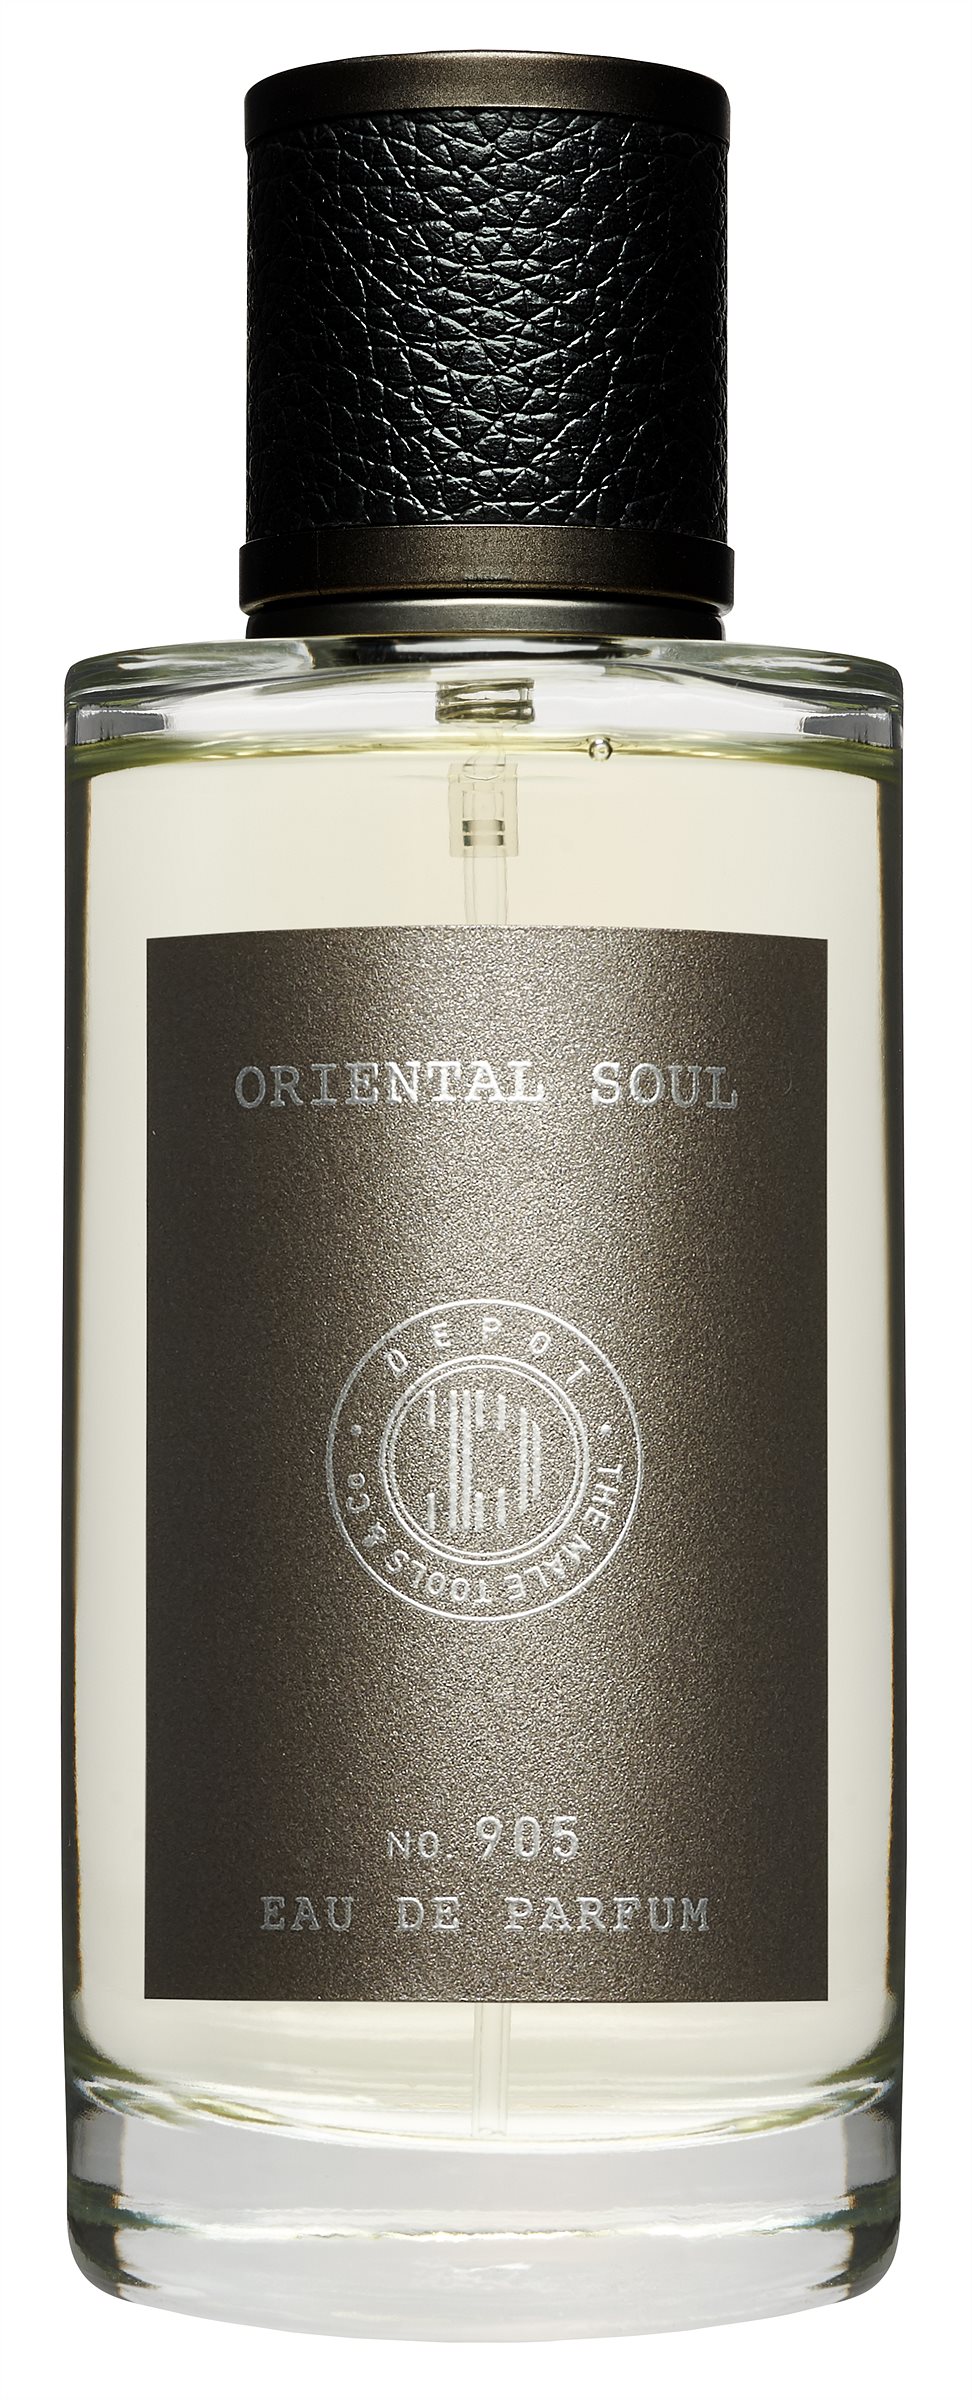 DEPOT_905 Oriental Soul Parfum_EUR 88,-